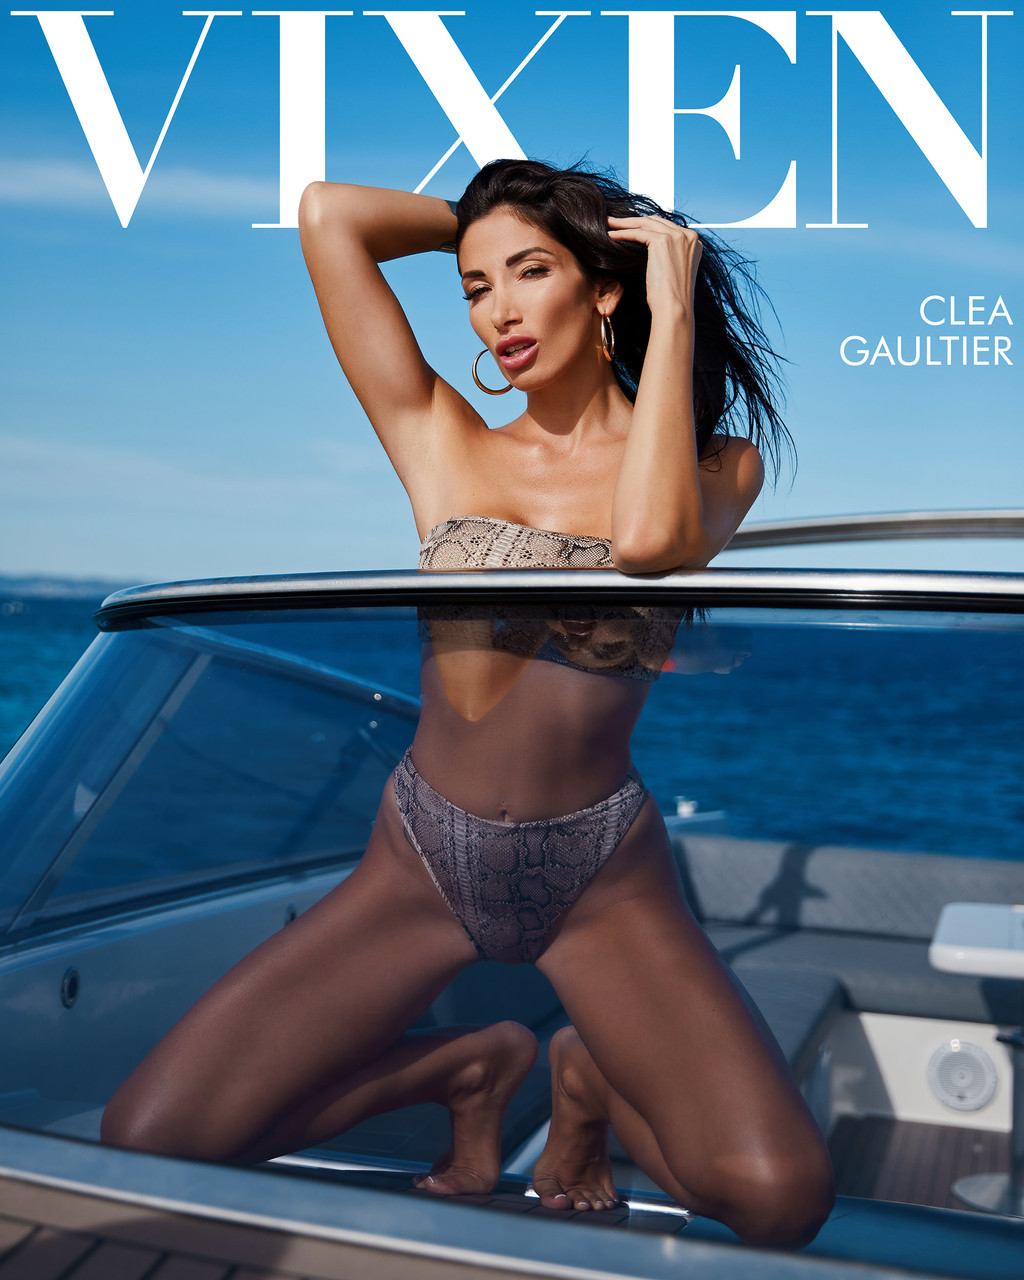 Vixen Christian Clay, Clea Gaultier porno fotoğrafı #425717676